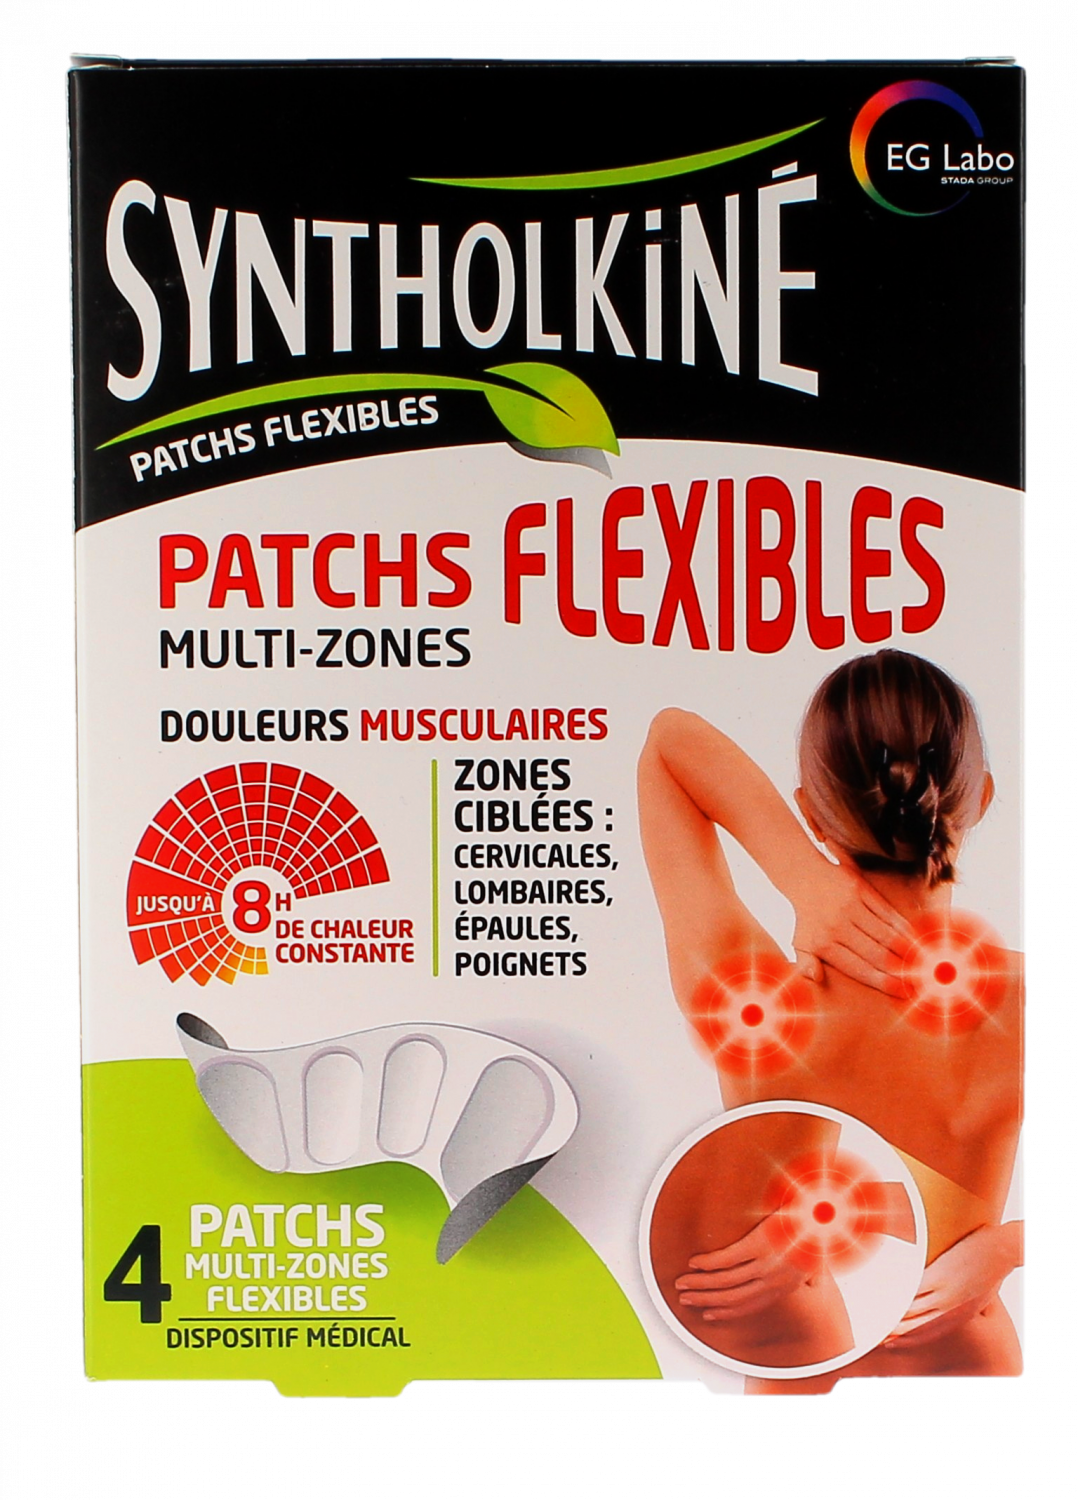 Patchs chauffants flexibles multi-zones Syntholkiné - boite de 4 patchs